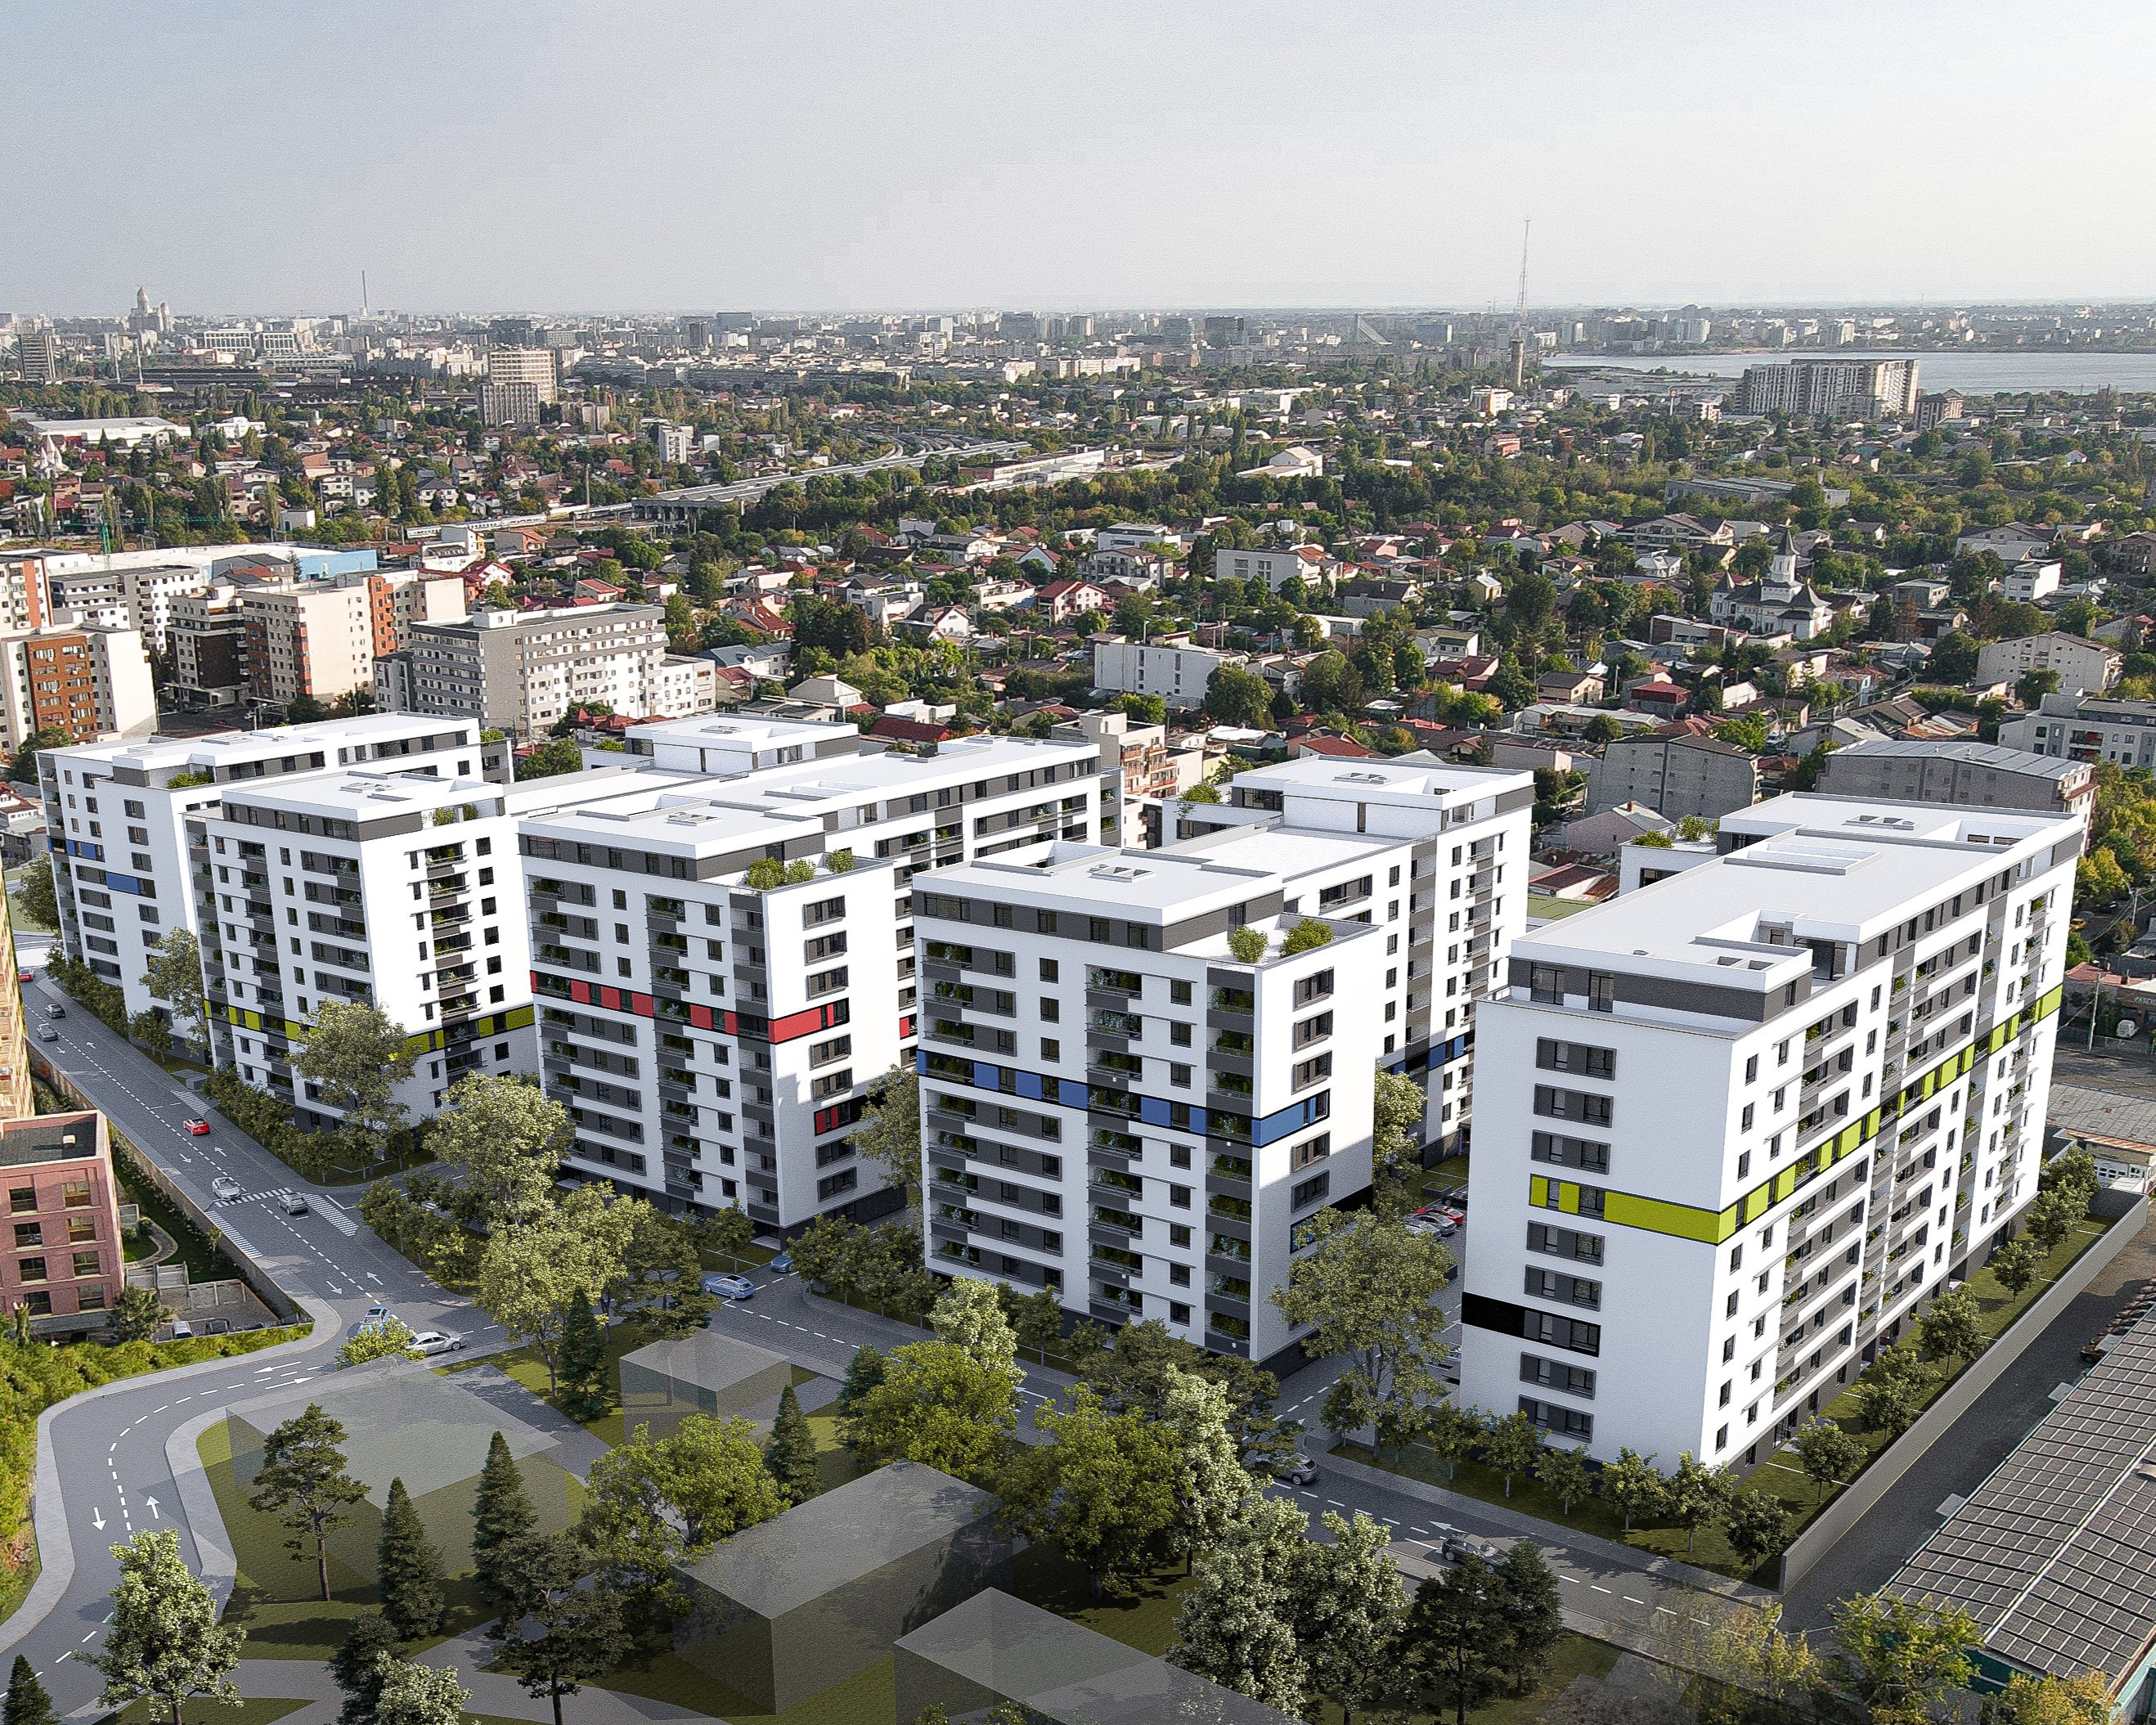 Dezvoltatorul imobiliar Akcent Development construieşte 723 de apartamente în zona Bucureştii Noi din Capitală, o investiţie de 90 de milioane de euro. Proiectul urmează să fie finalizat în octombrie 2025